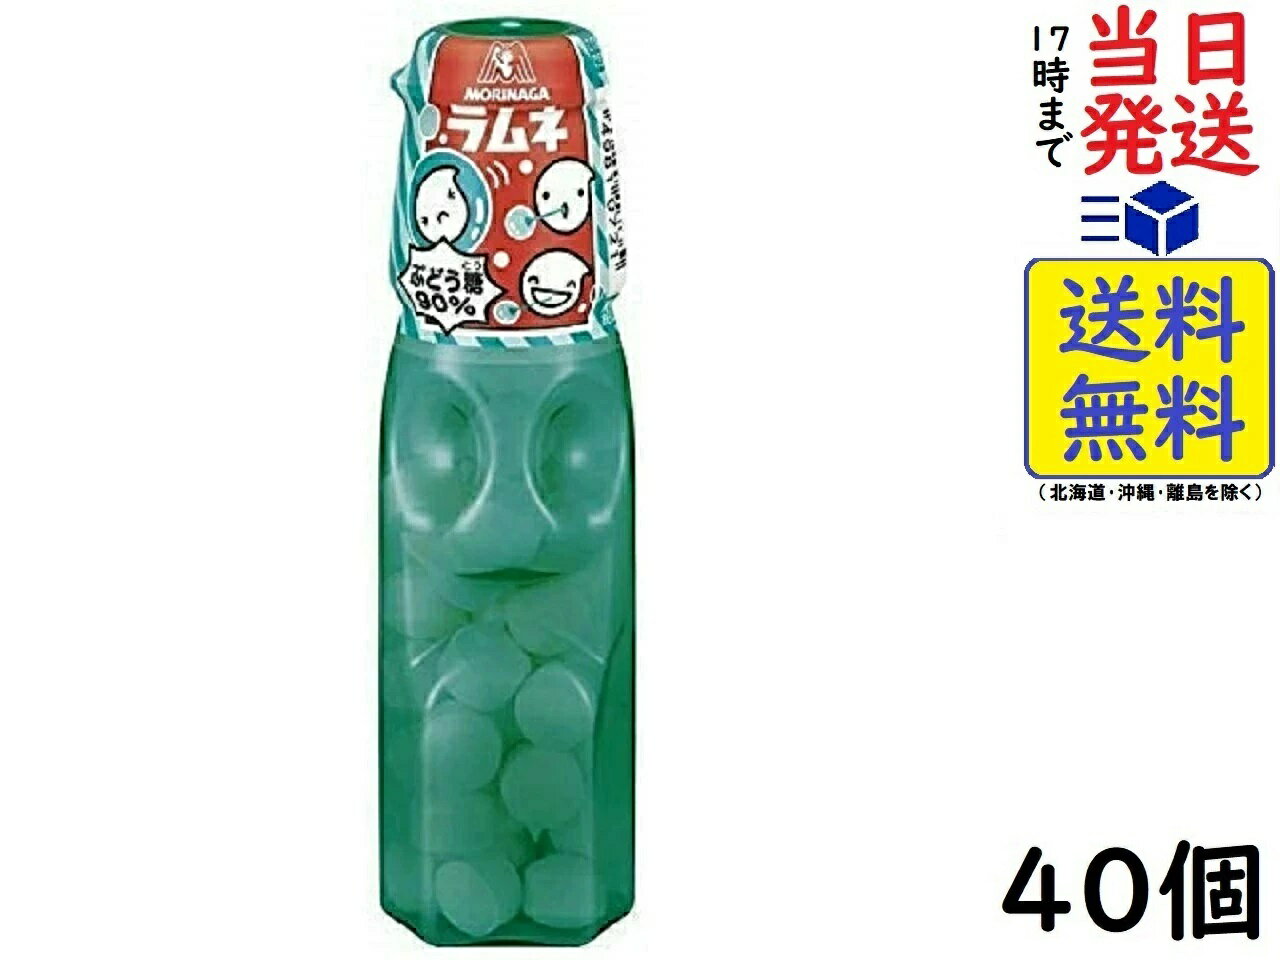 カクダイ製菓 クッピーラムネ 11g×30袋入 (駄菓子 清涼菓子 ラムネ お菓子 景品 ばらまき まとめ買い)